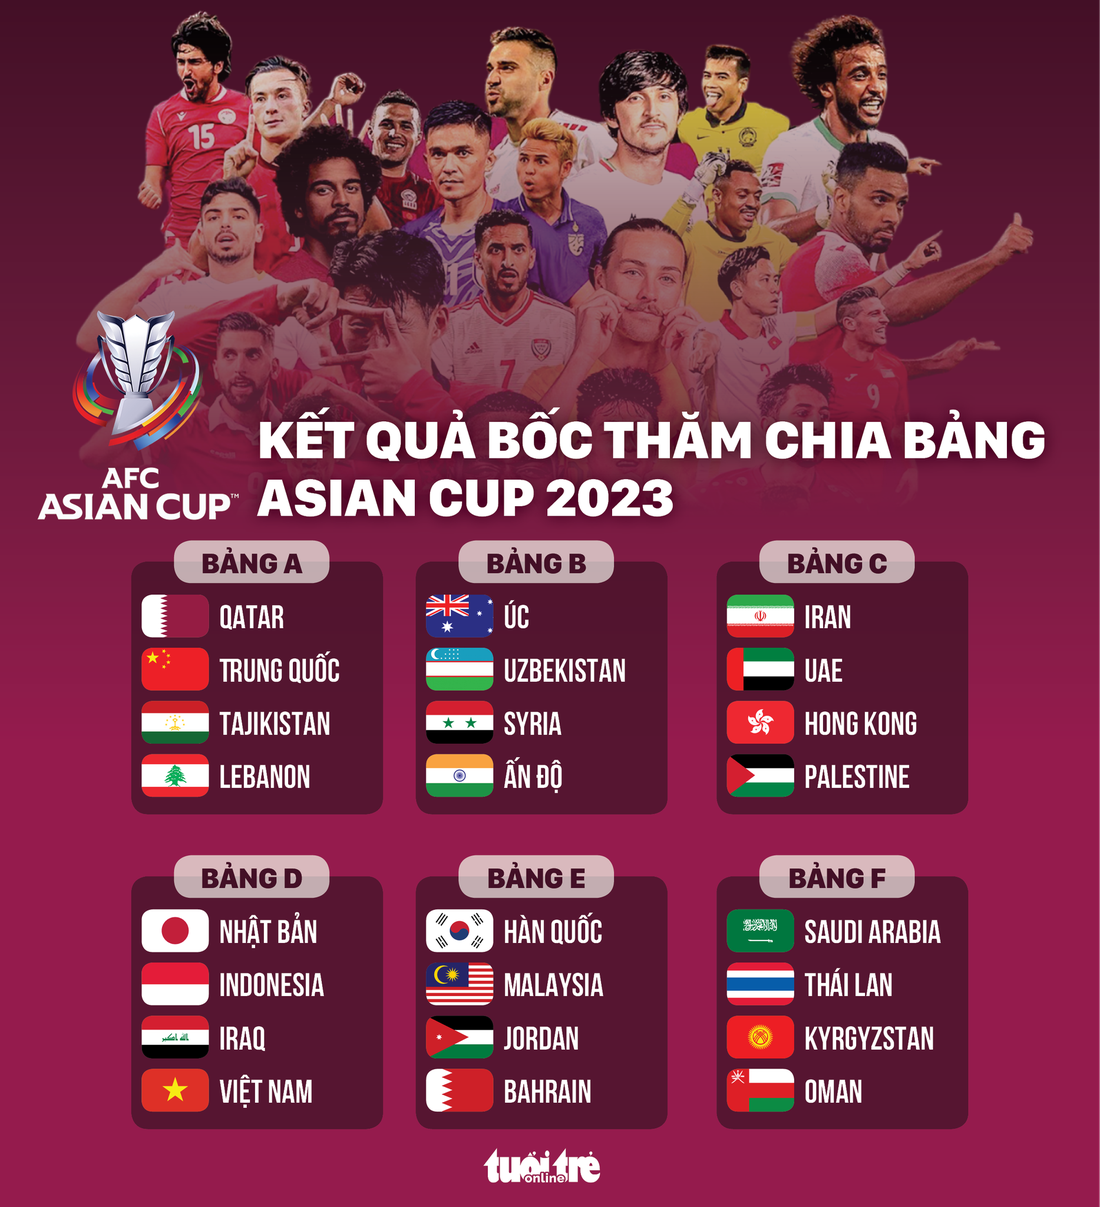 Kết trái khoáy bốc thăm hỏi phân chia bảng Asian Cup 2023- Ảnh: Đồ họa: AN BÌNH